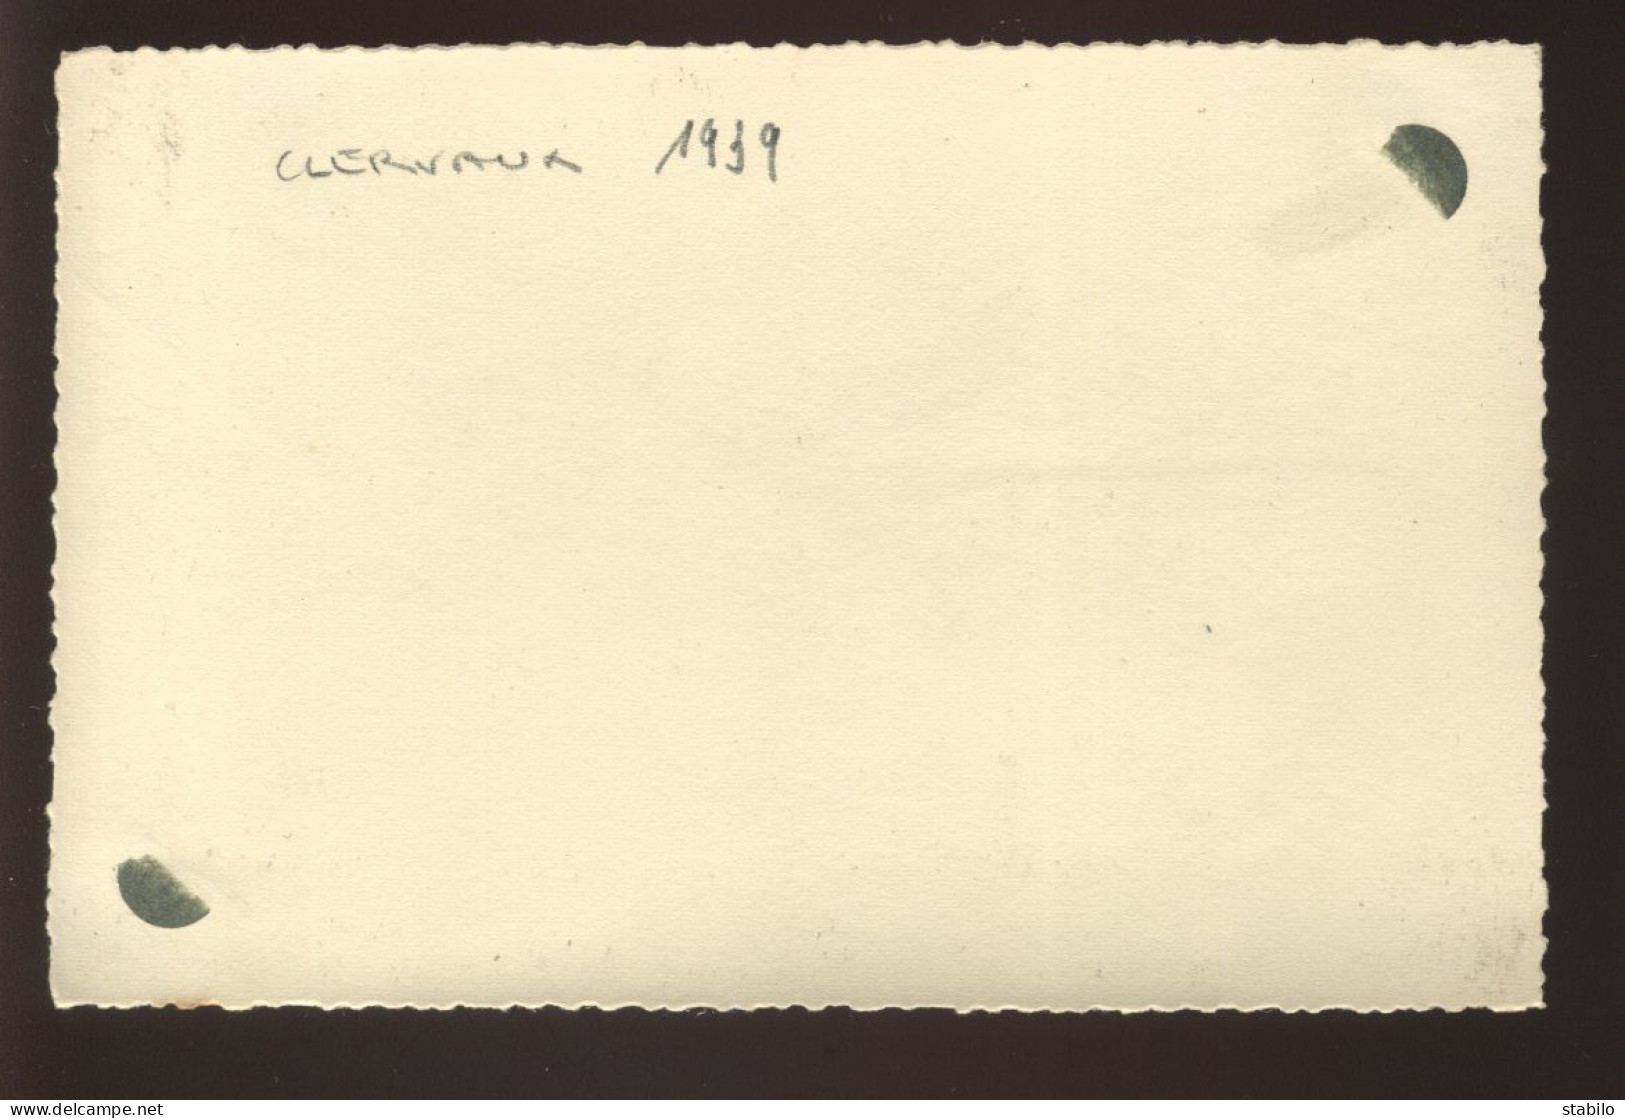 LUXEMBOURG - CLERVAUX - 1939 - FORMAT 13.5 X 8.8 CM - Plaatsen